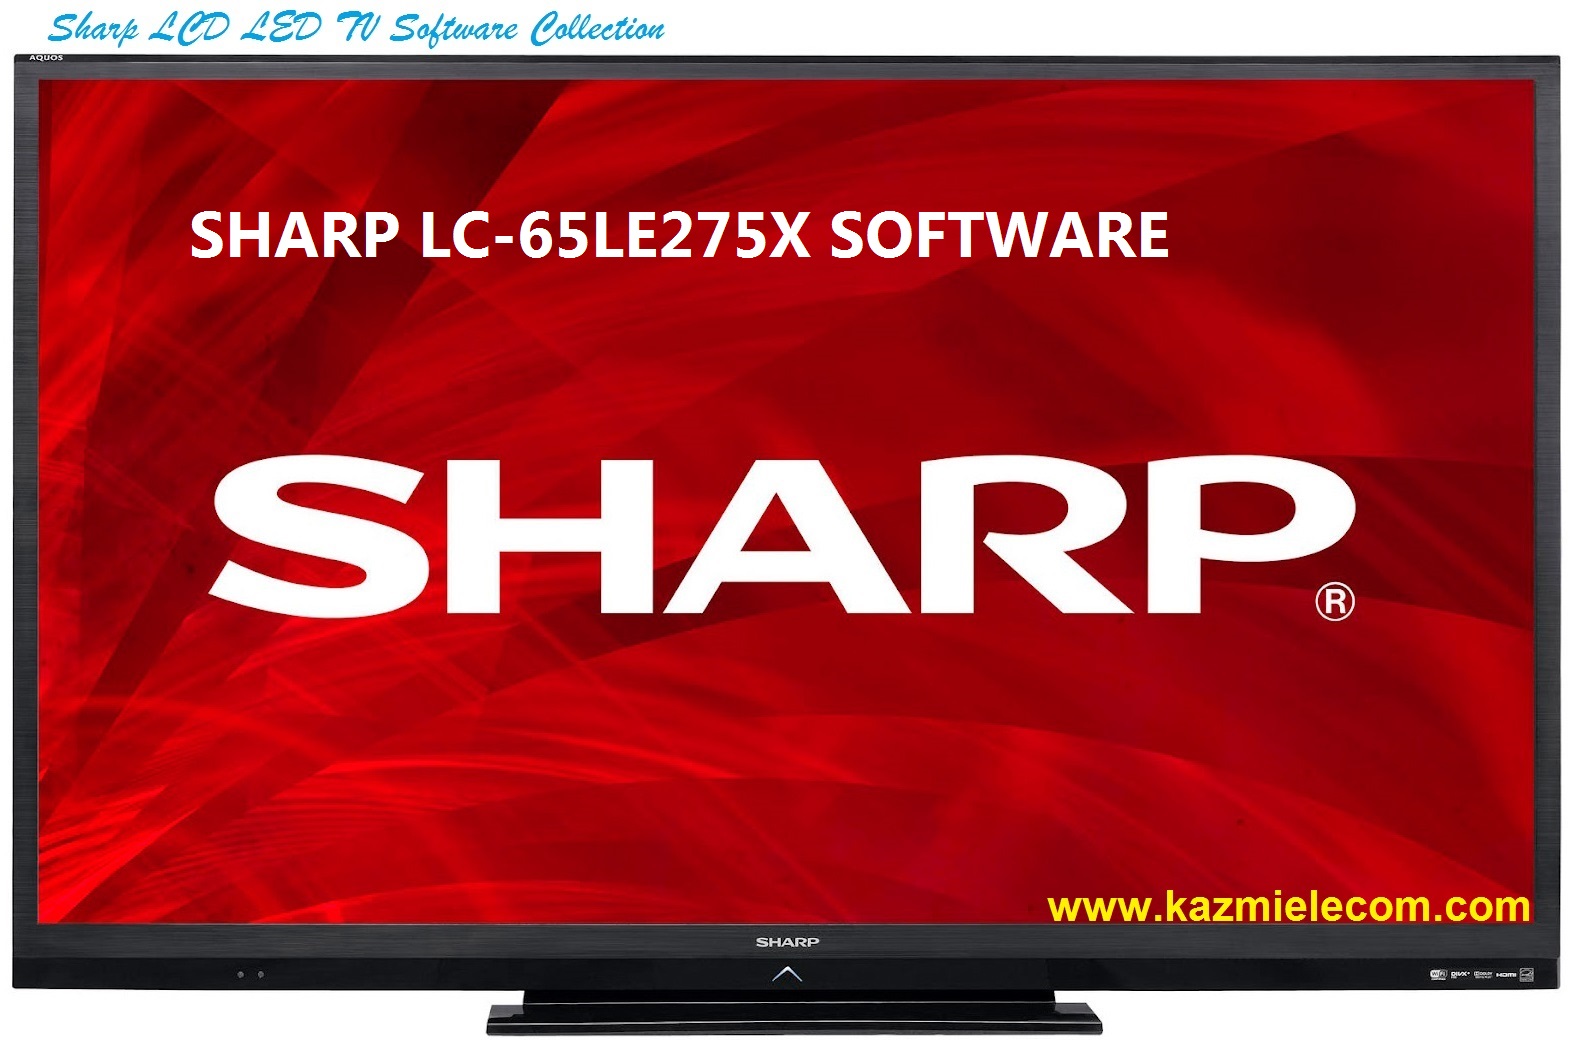 Sharp Lc-65Le275X